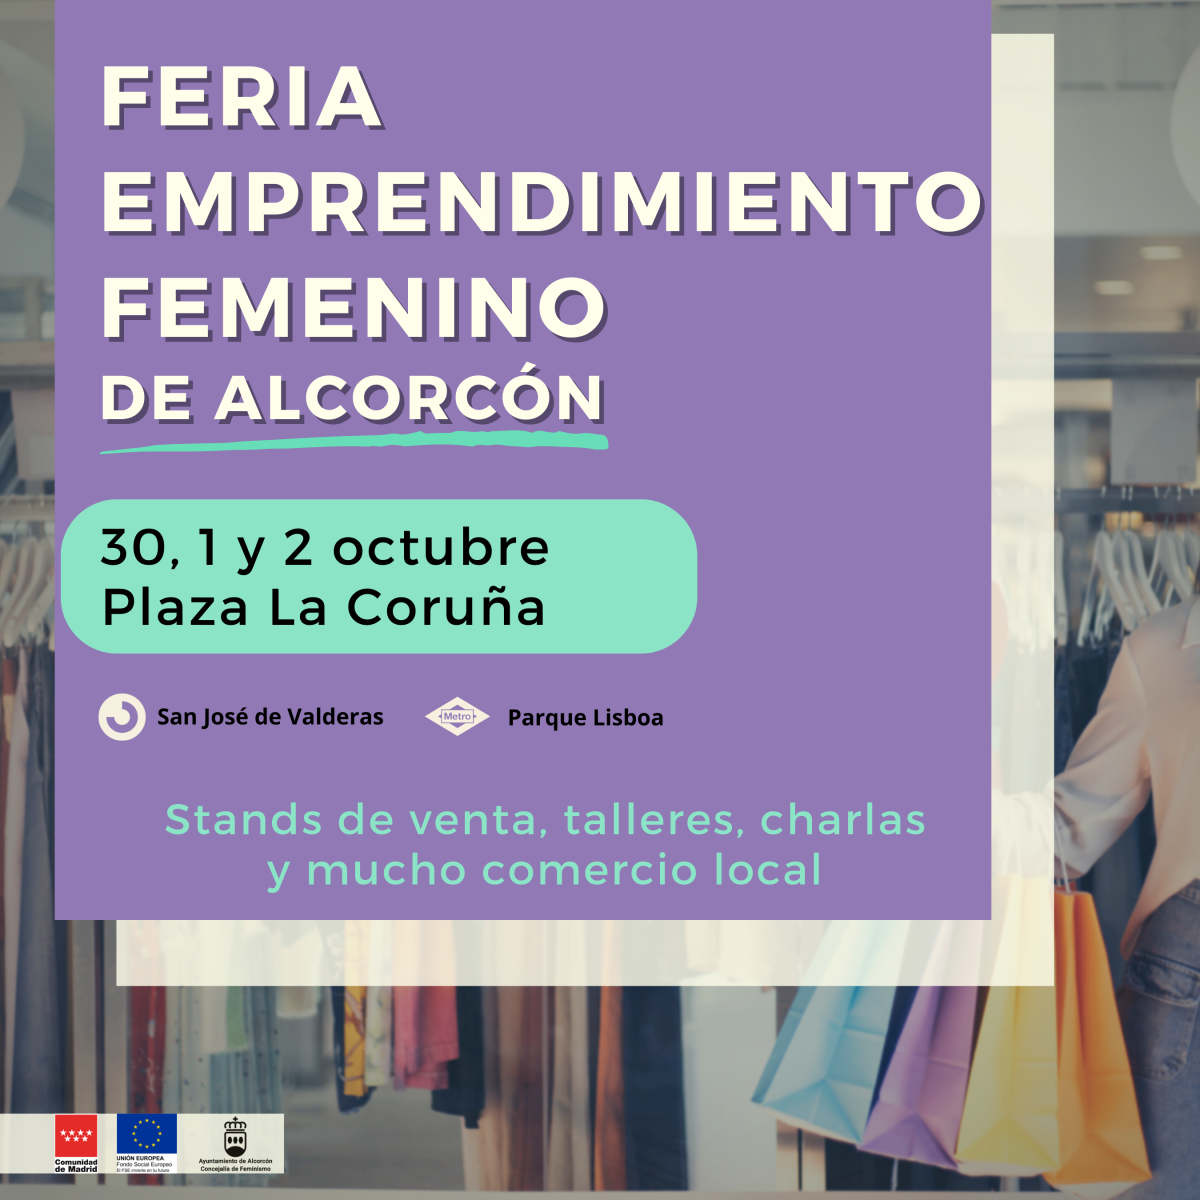 Pocos días para la mayor feria de emprendimiento femenino de Alcorcón